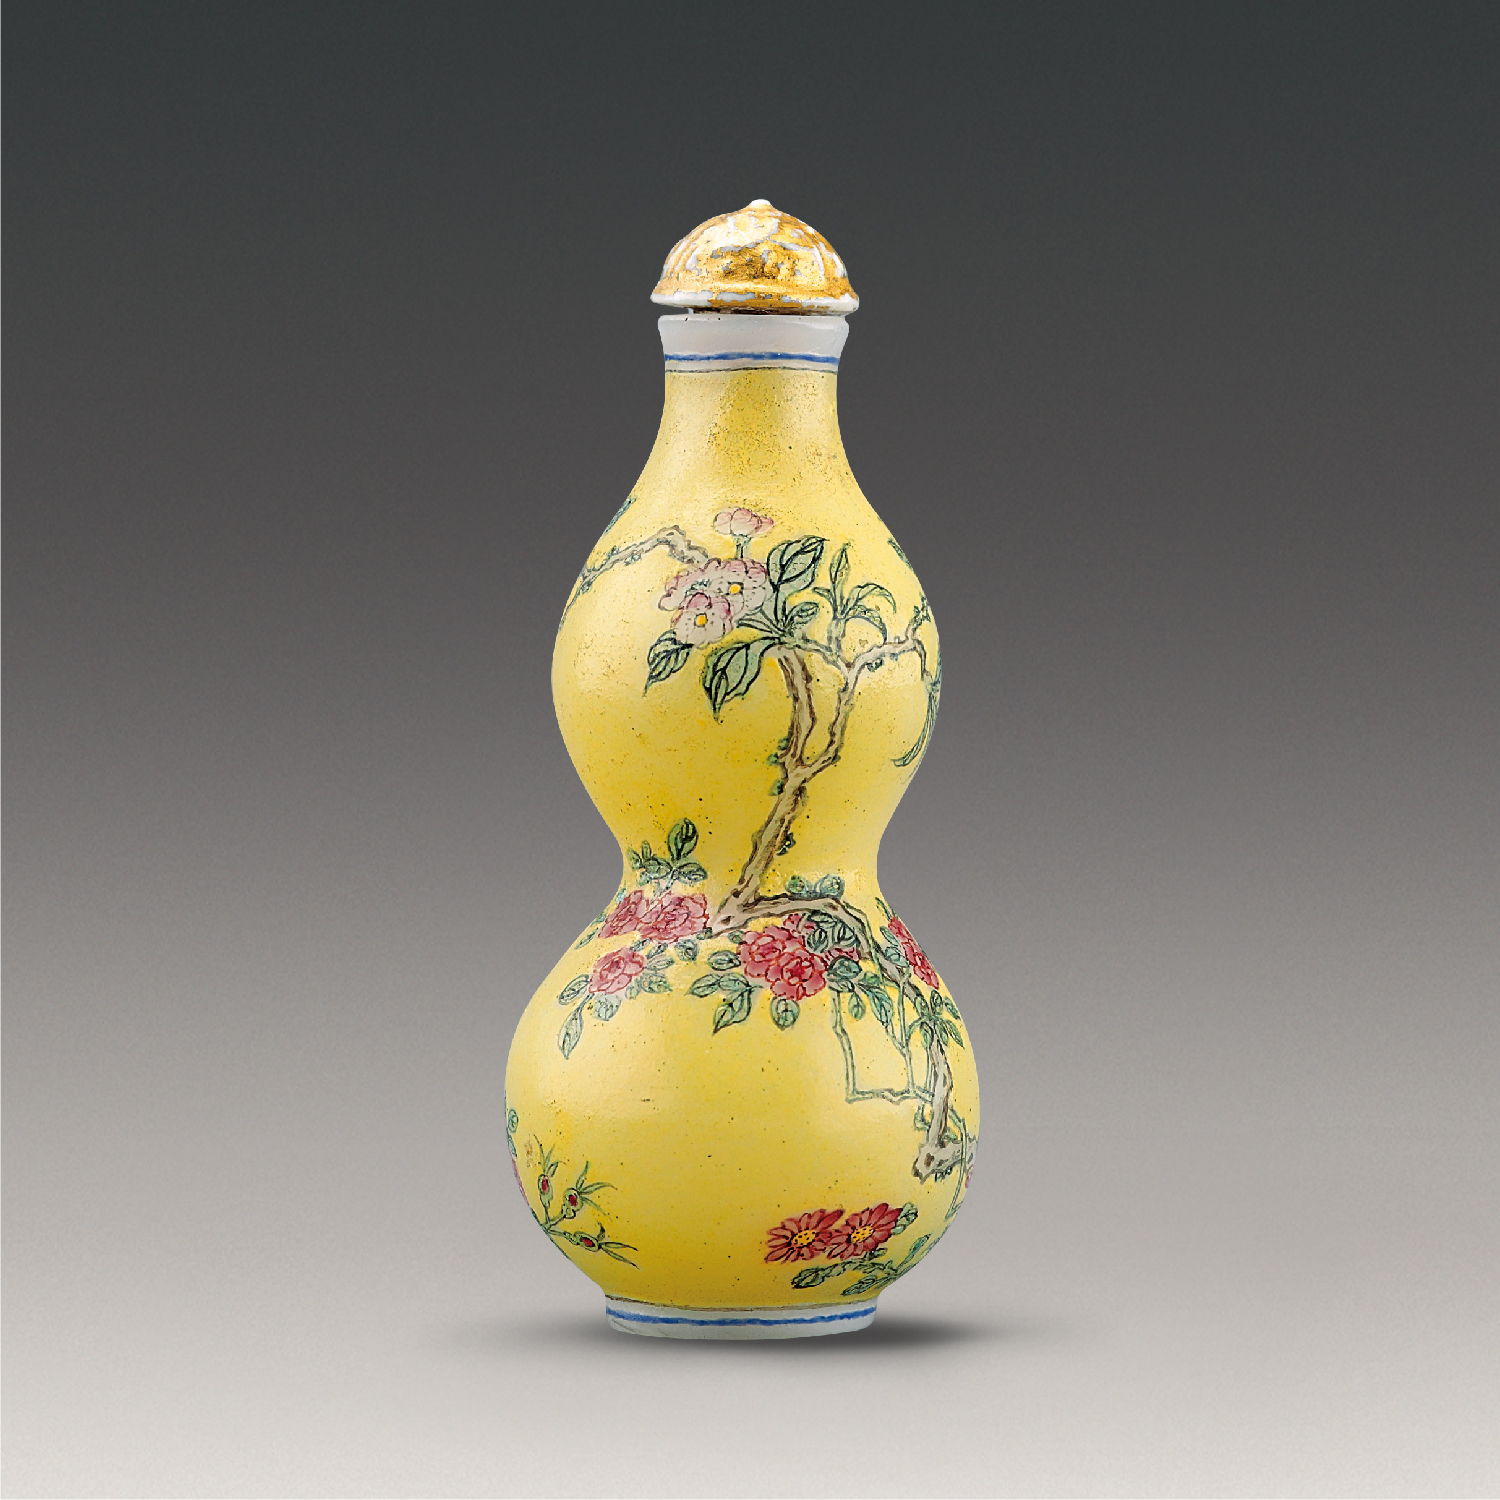 玻璃胎畫琺瑯黃地花卉圖葫蘆形鼻煙壺